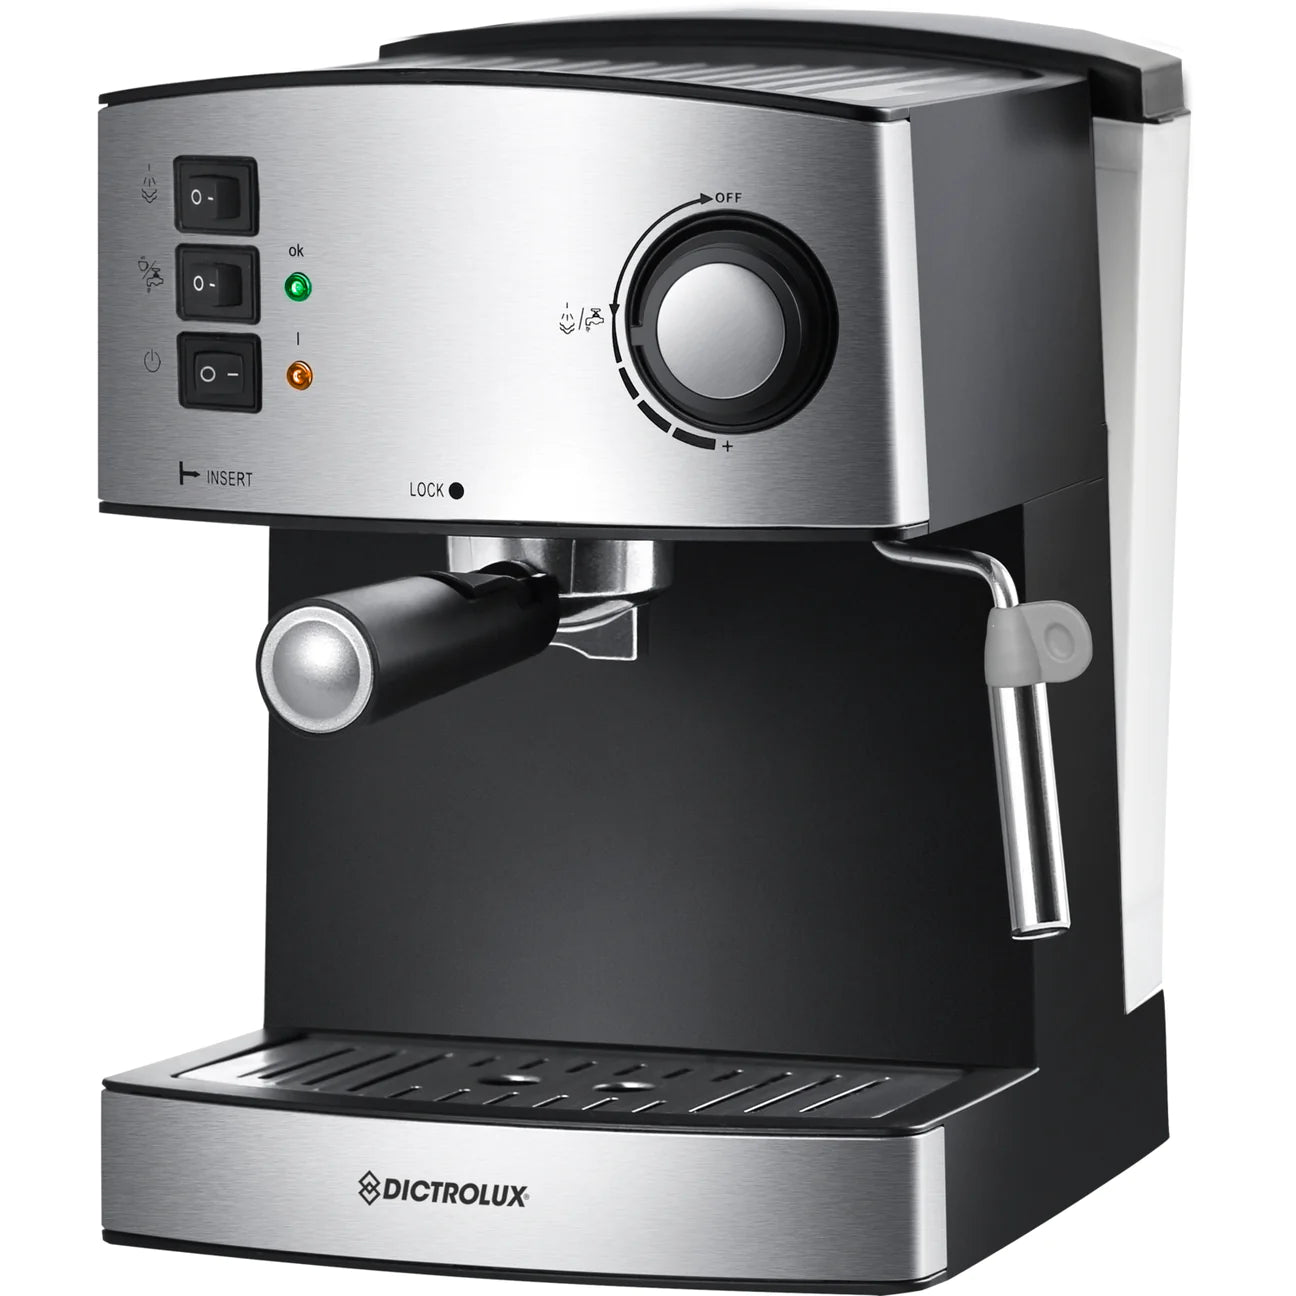 DICTROLUX
Macchina da caffè espresso 850 Watt